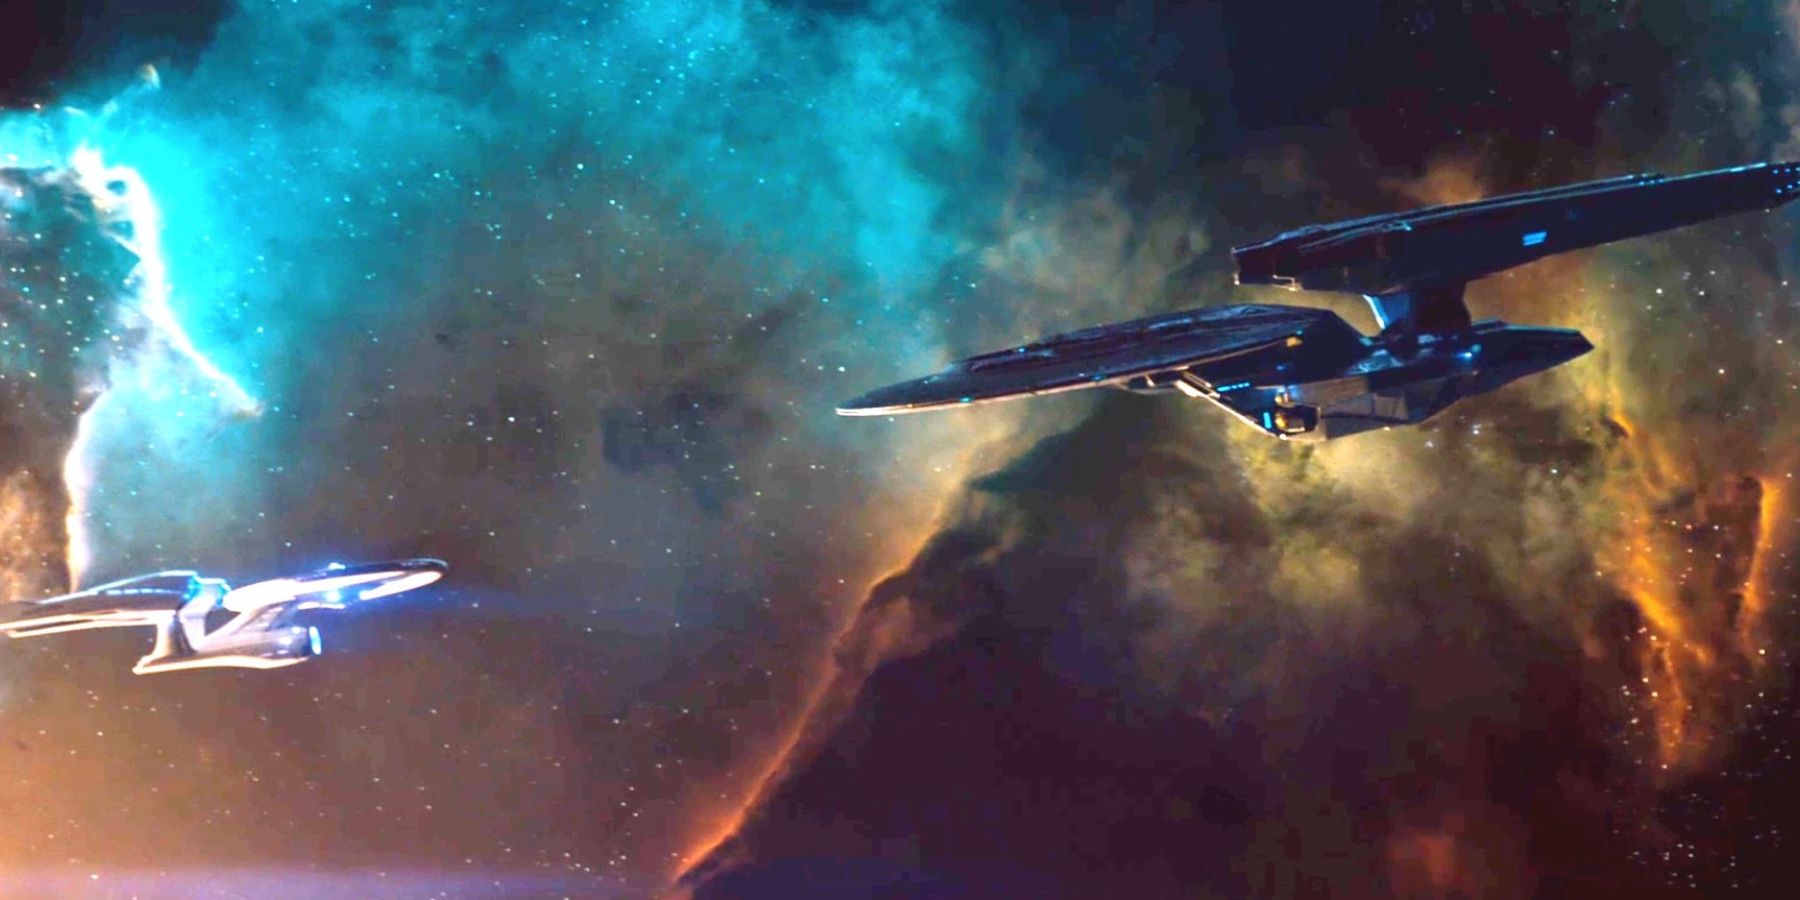 Star_Trek: ven and enterprise